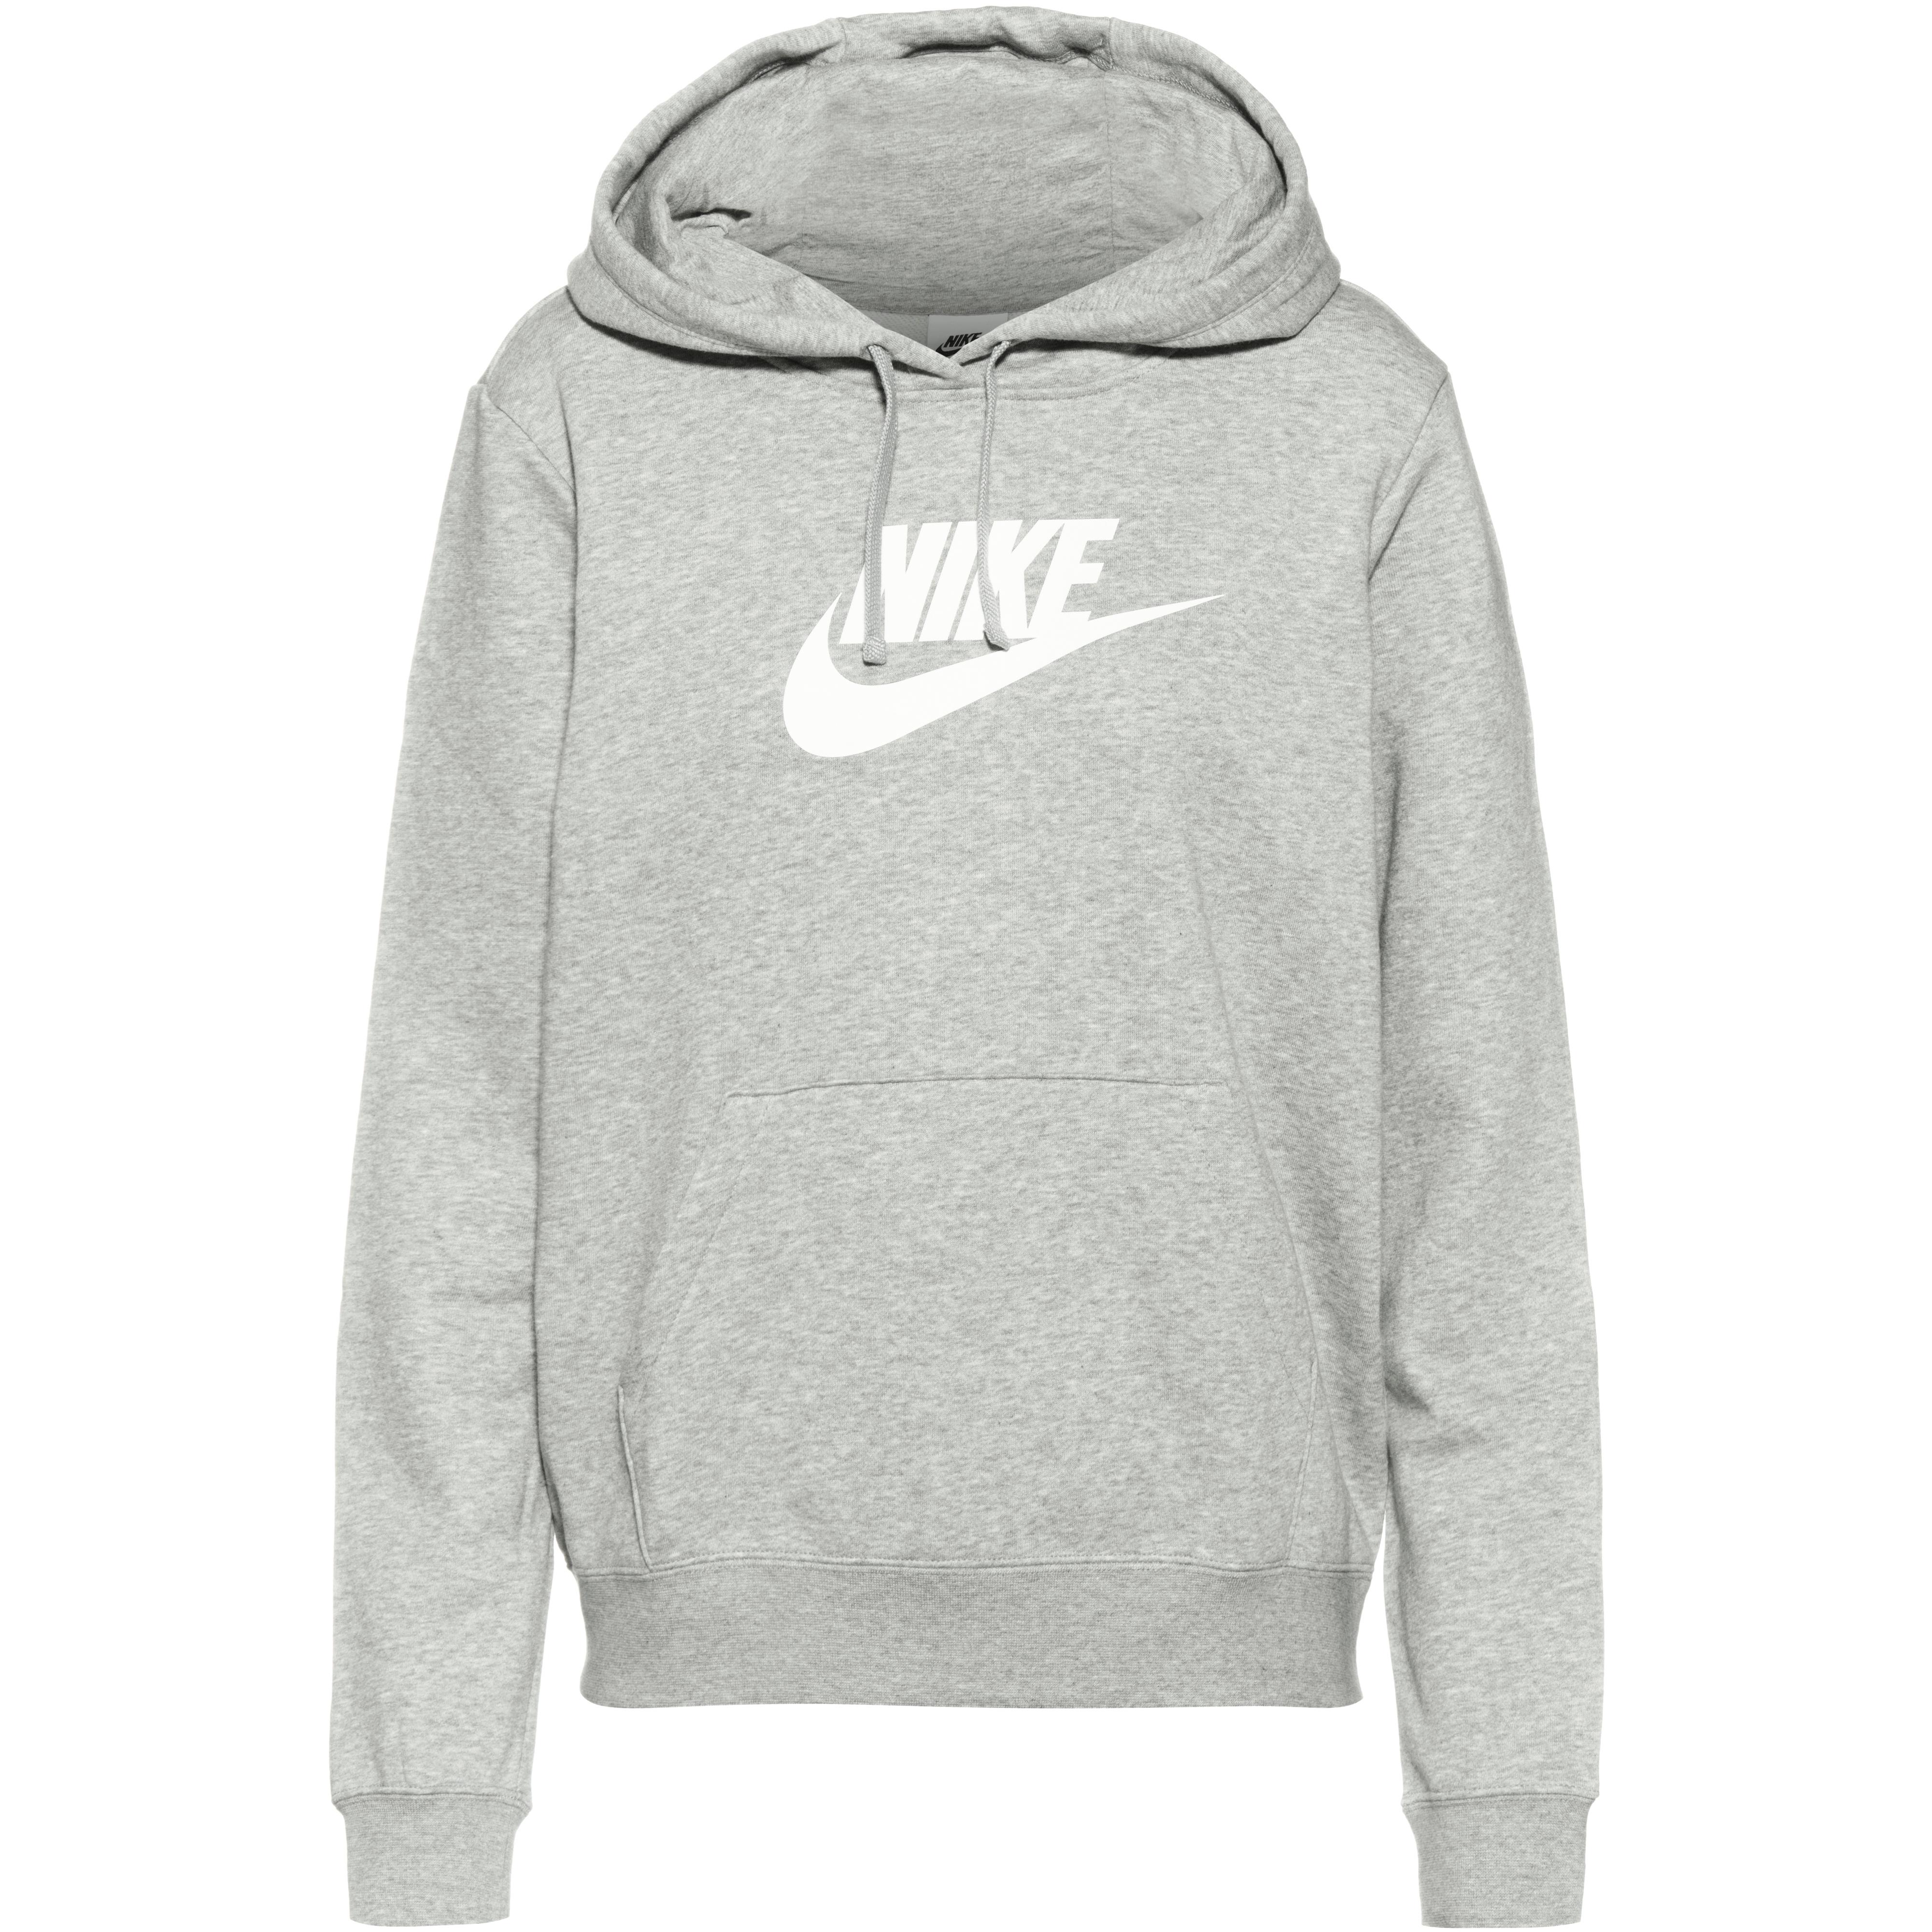 Pullover für Damen von Nike in grau im Online Shop von kaufen